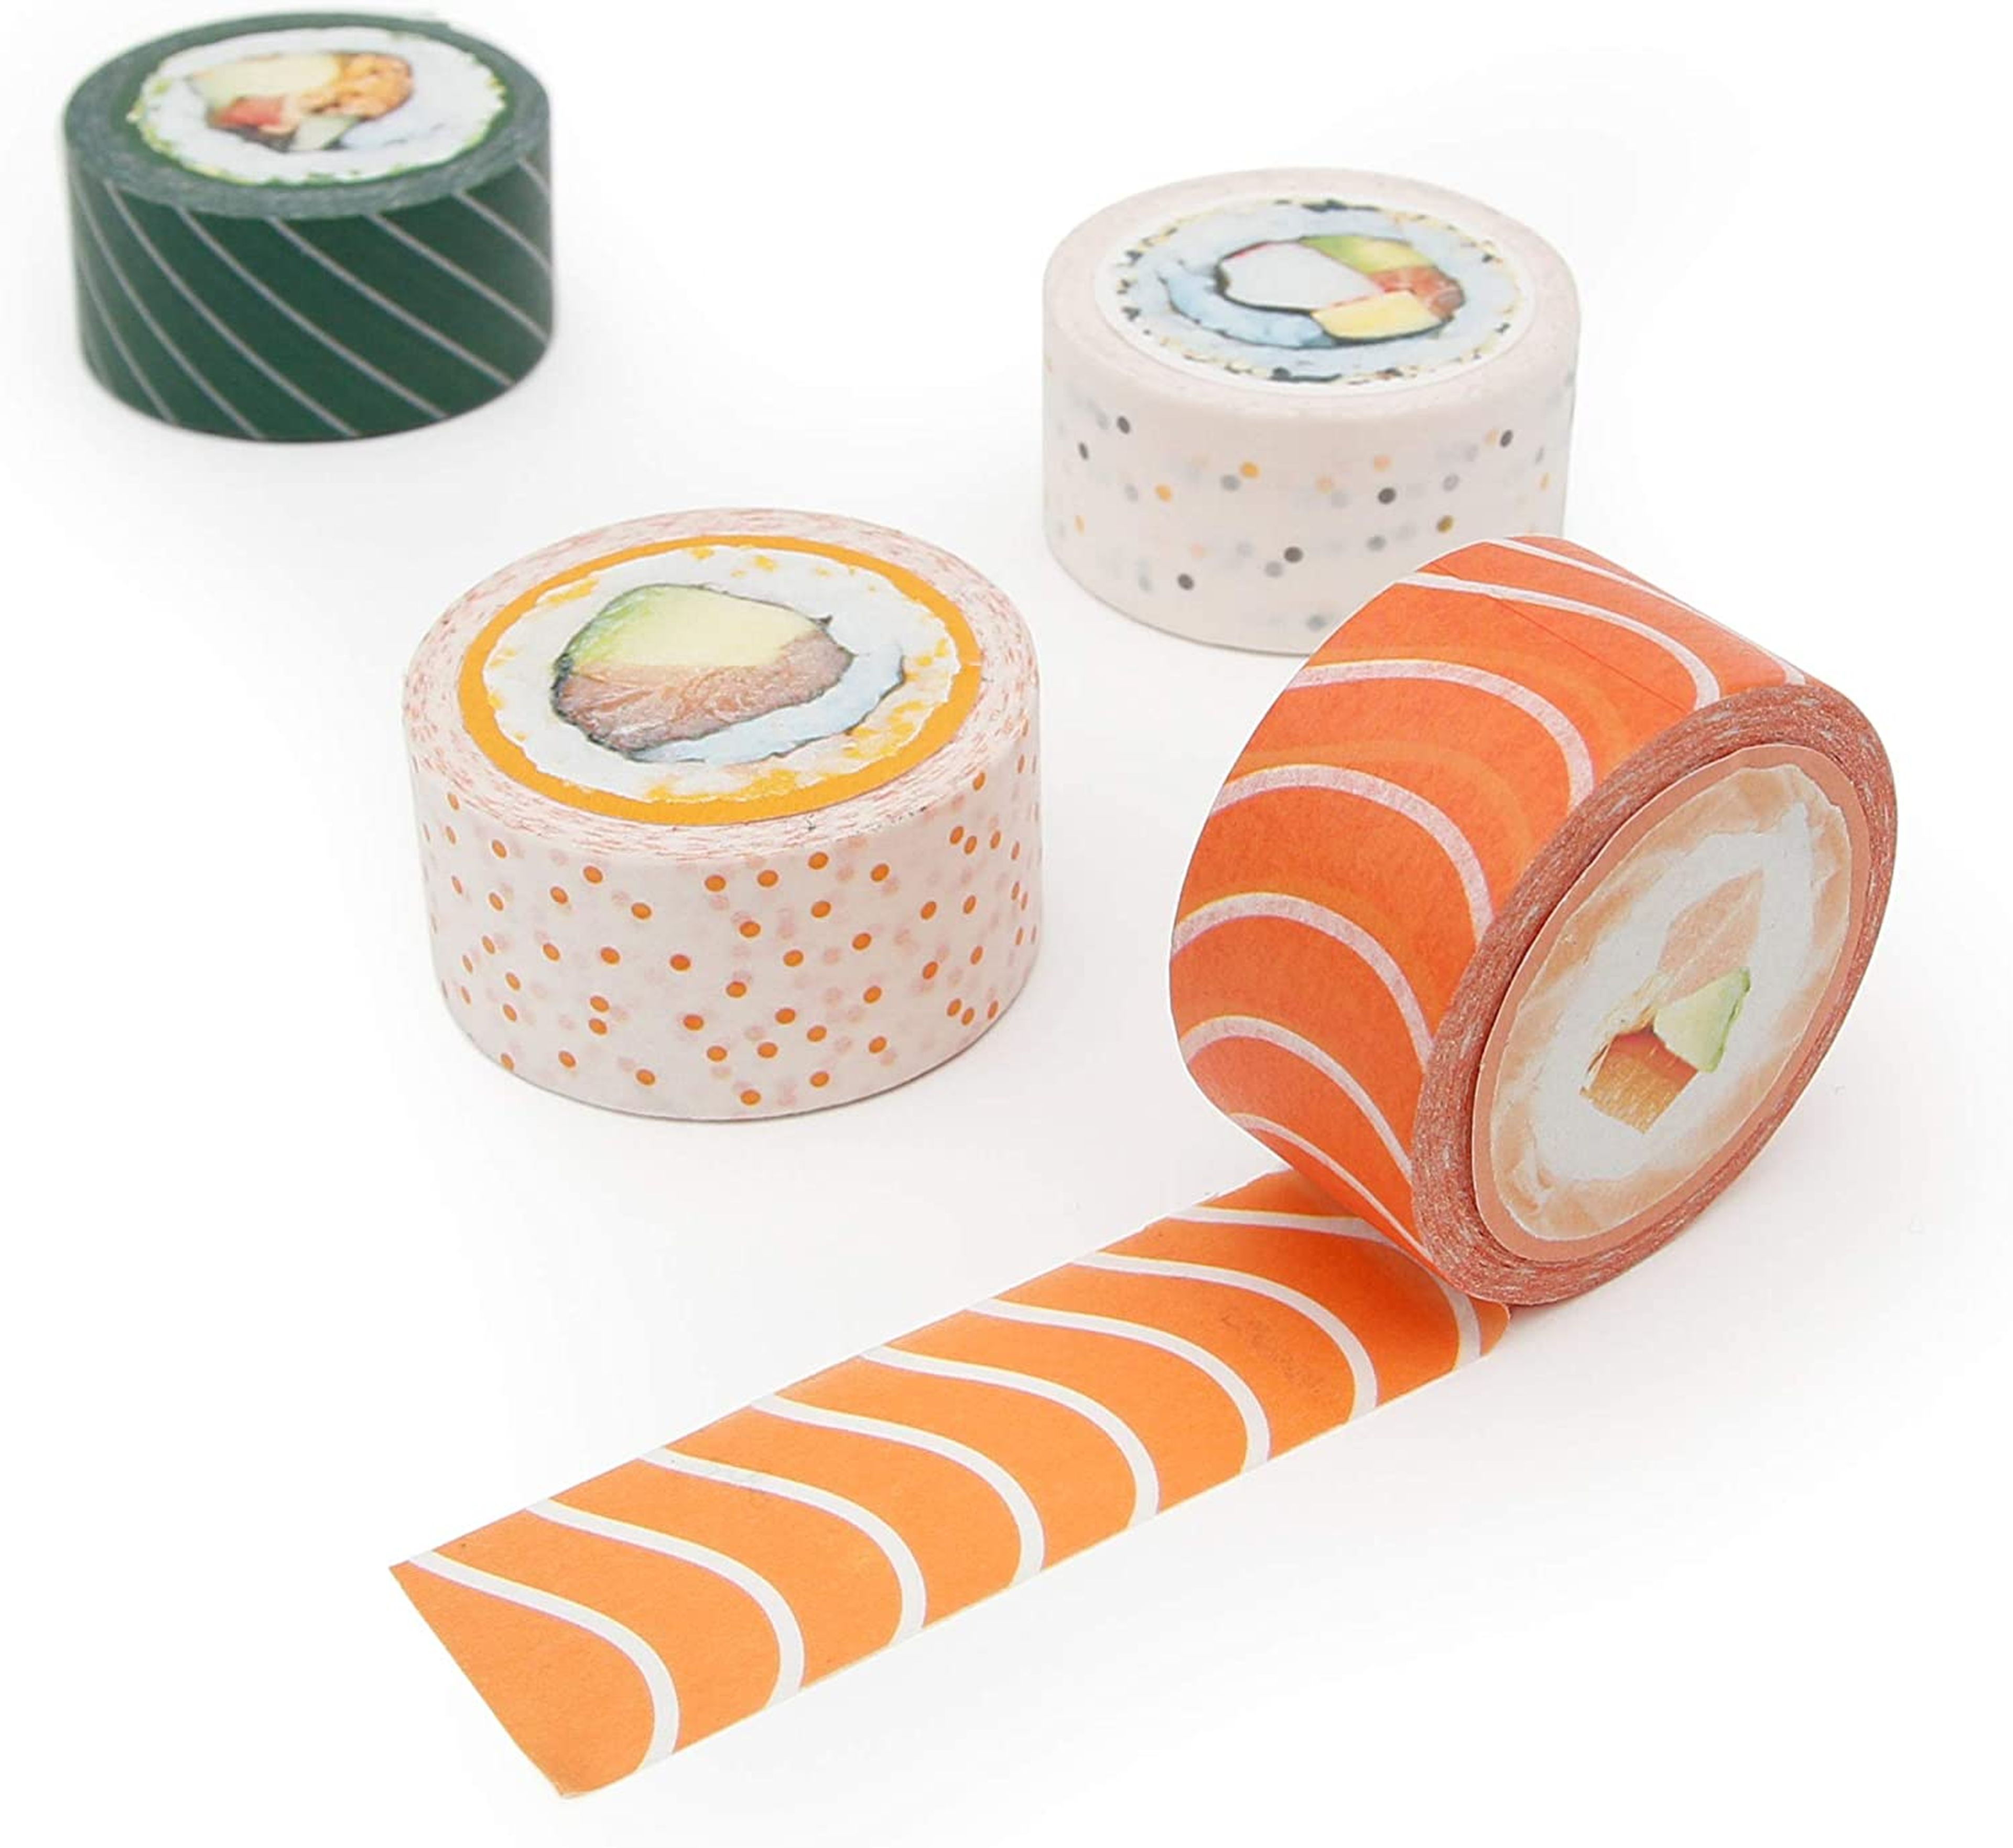 Cinta adhesiva con forma de sushi